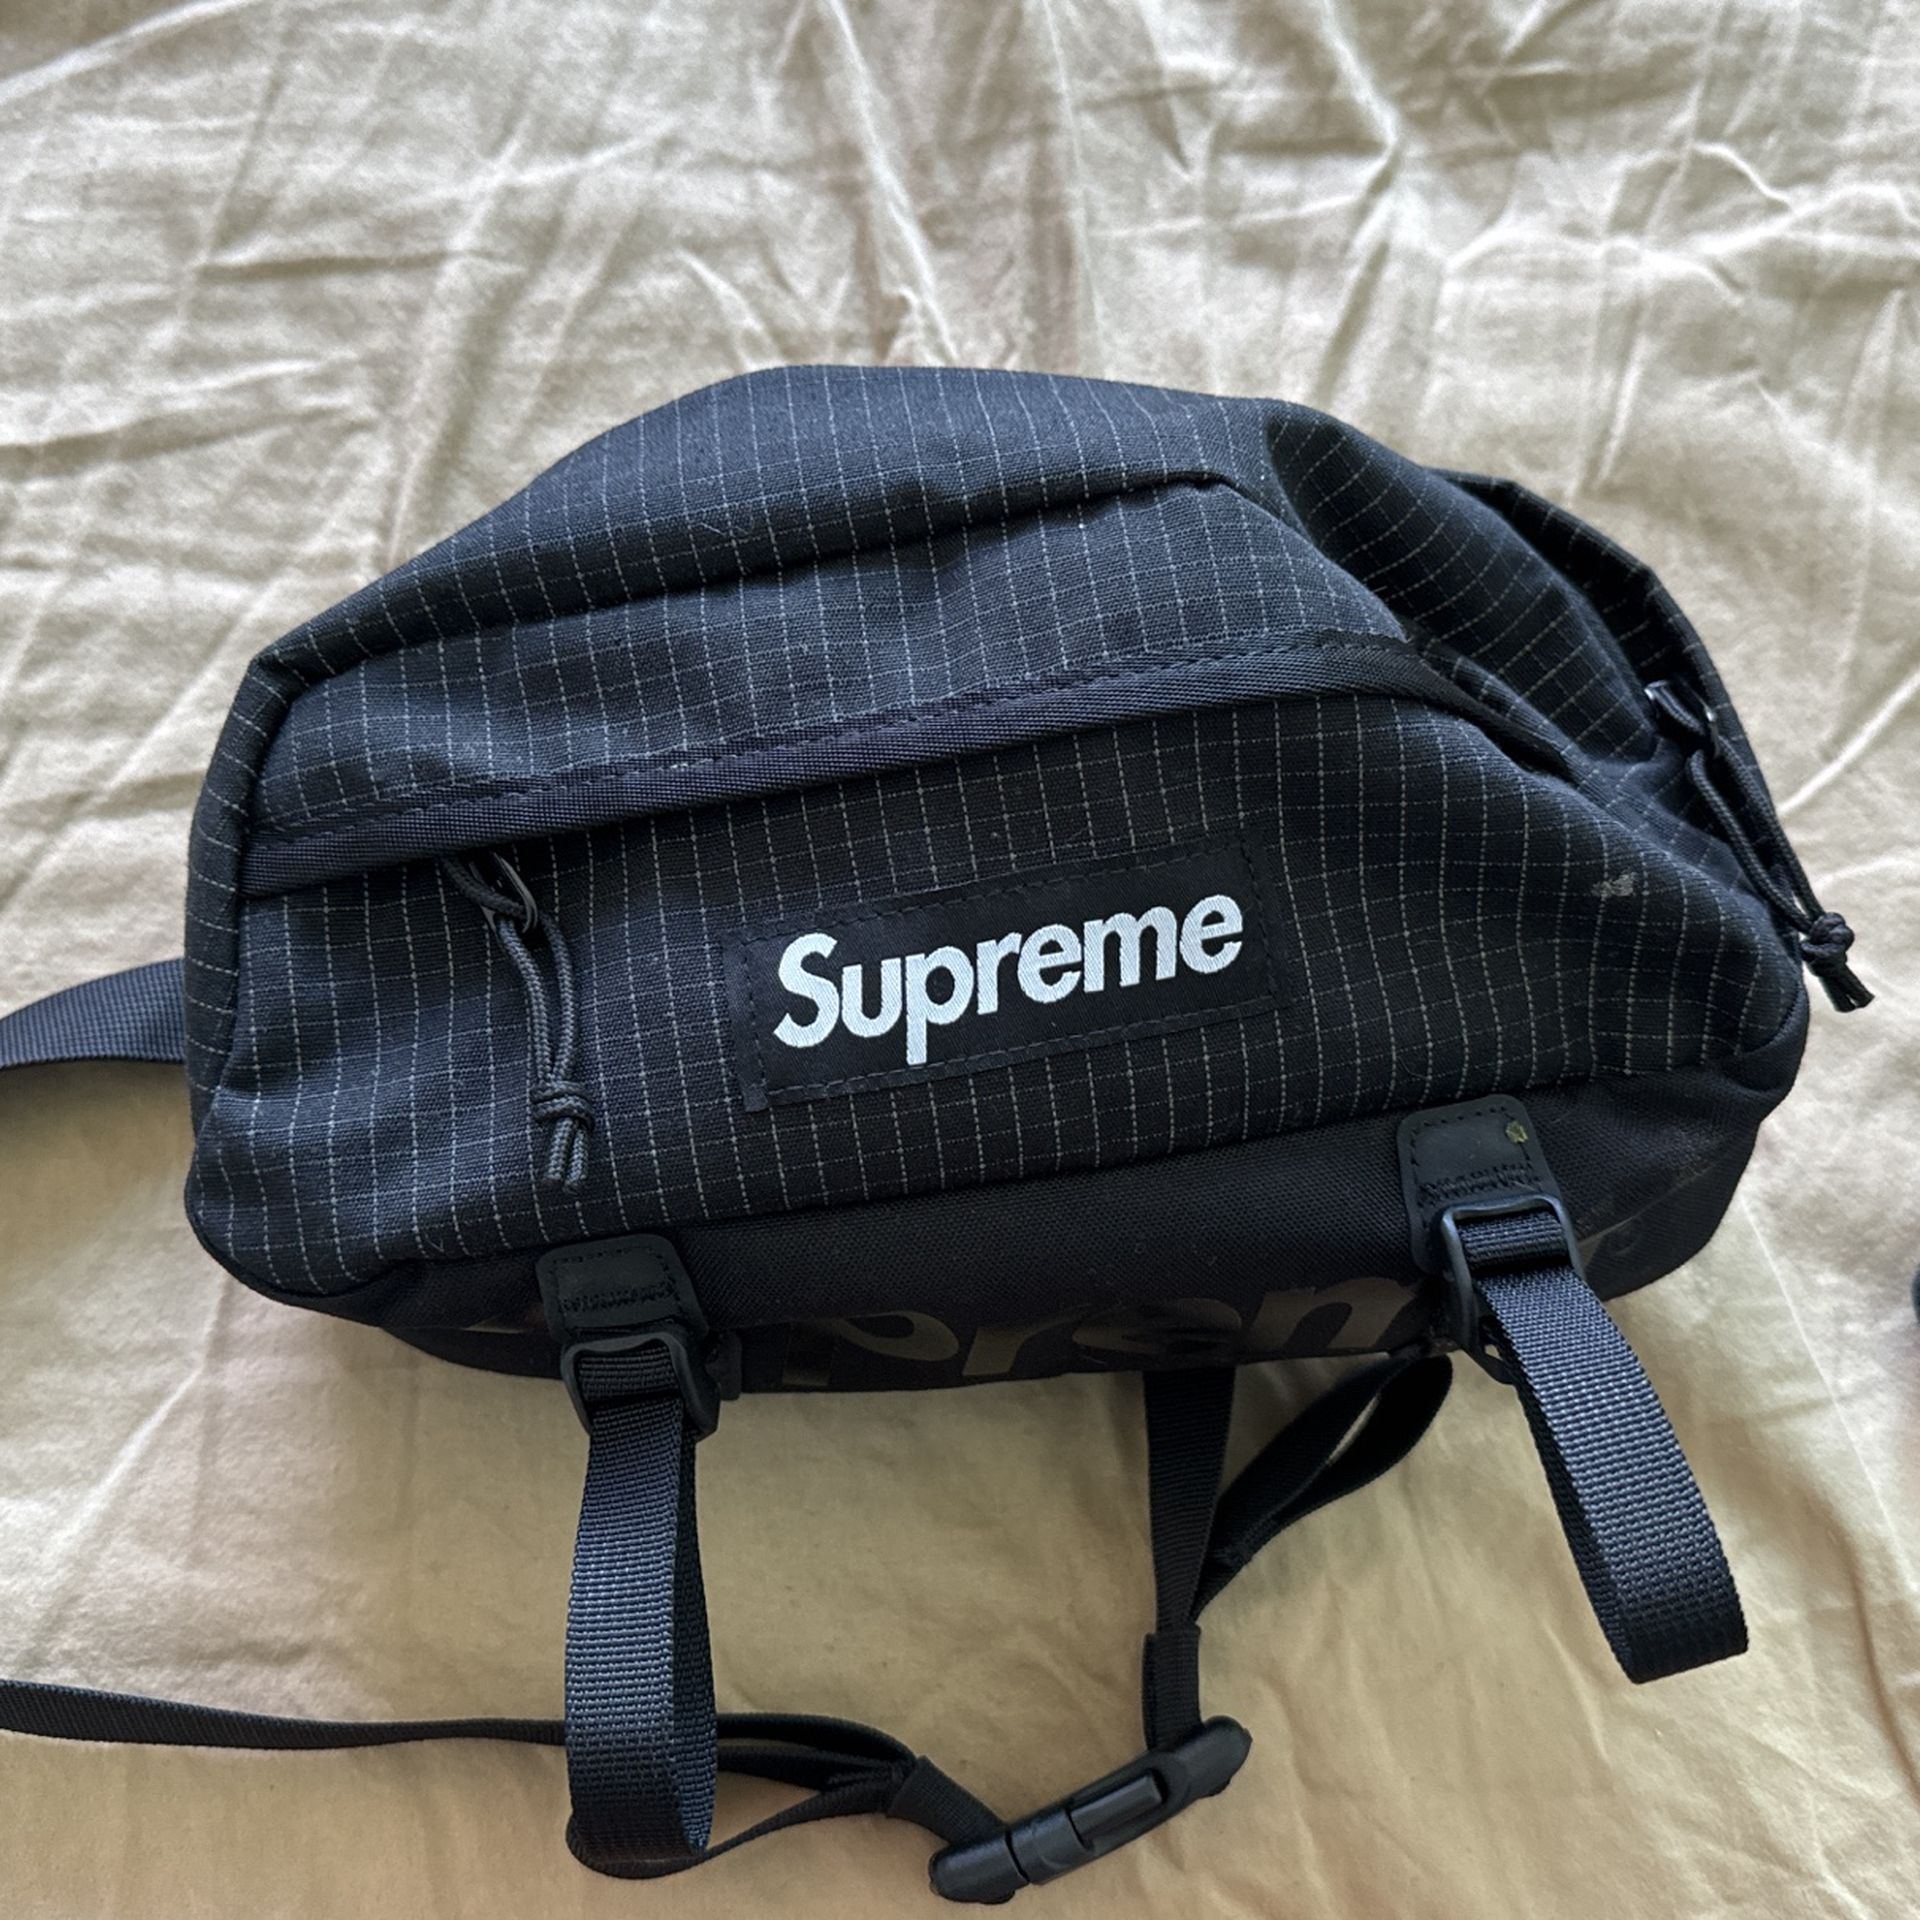 Brand New Supreme Shoulder Bag Never Used 